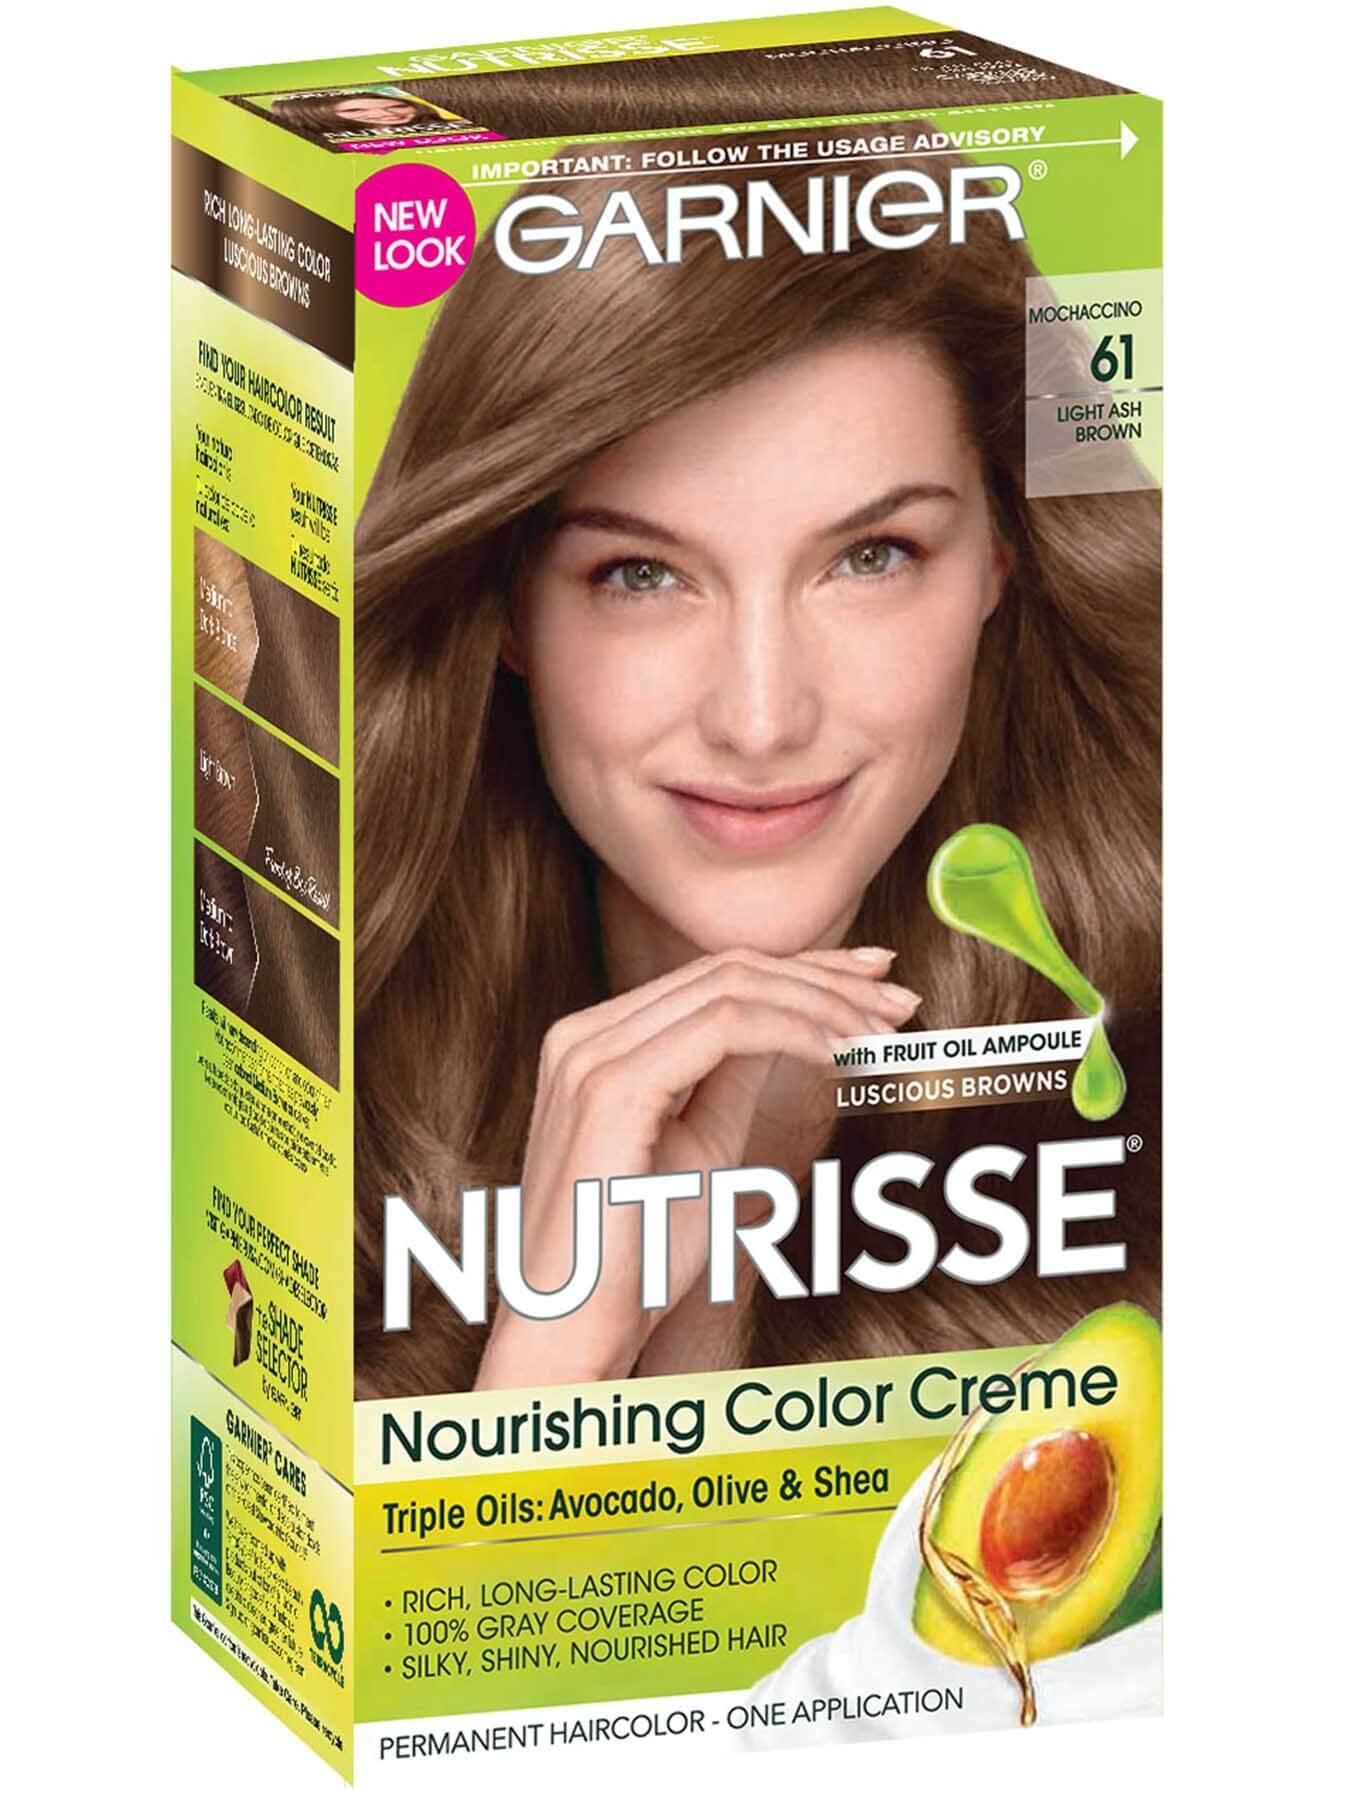 Nutrisse Nourishing Color Creme - Light Ash Brown 61 - Garnier